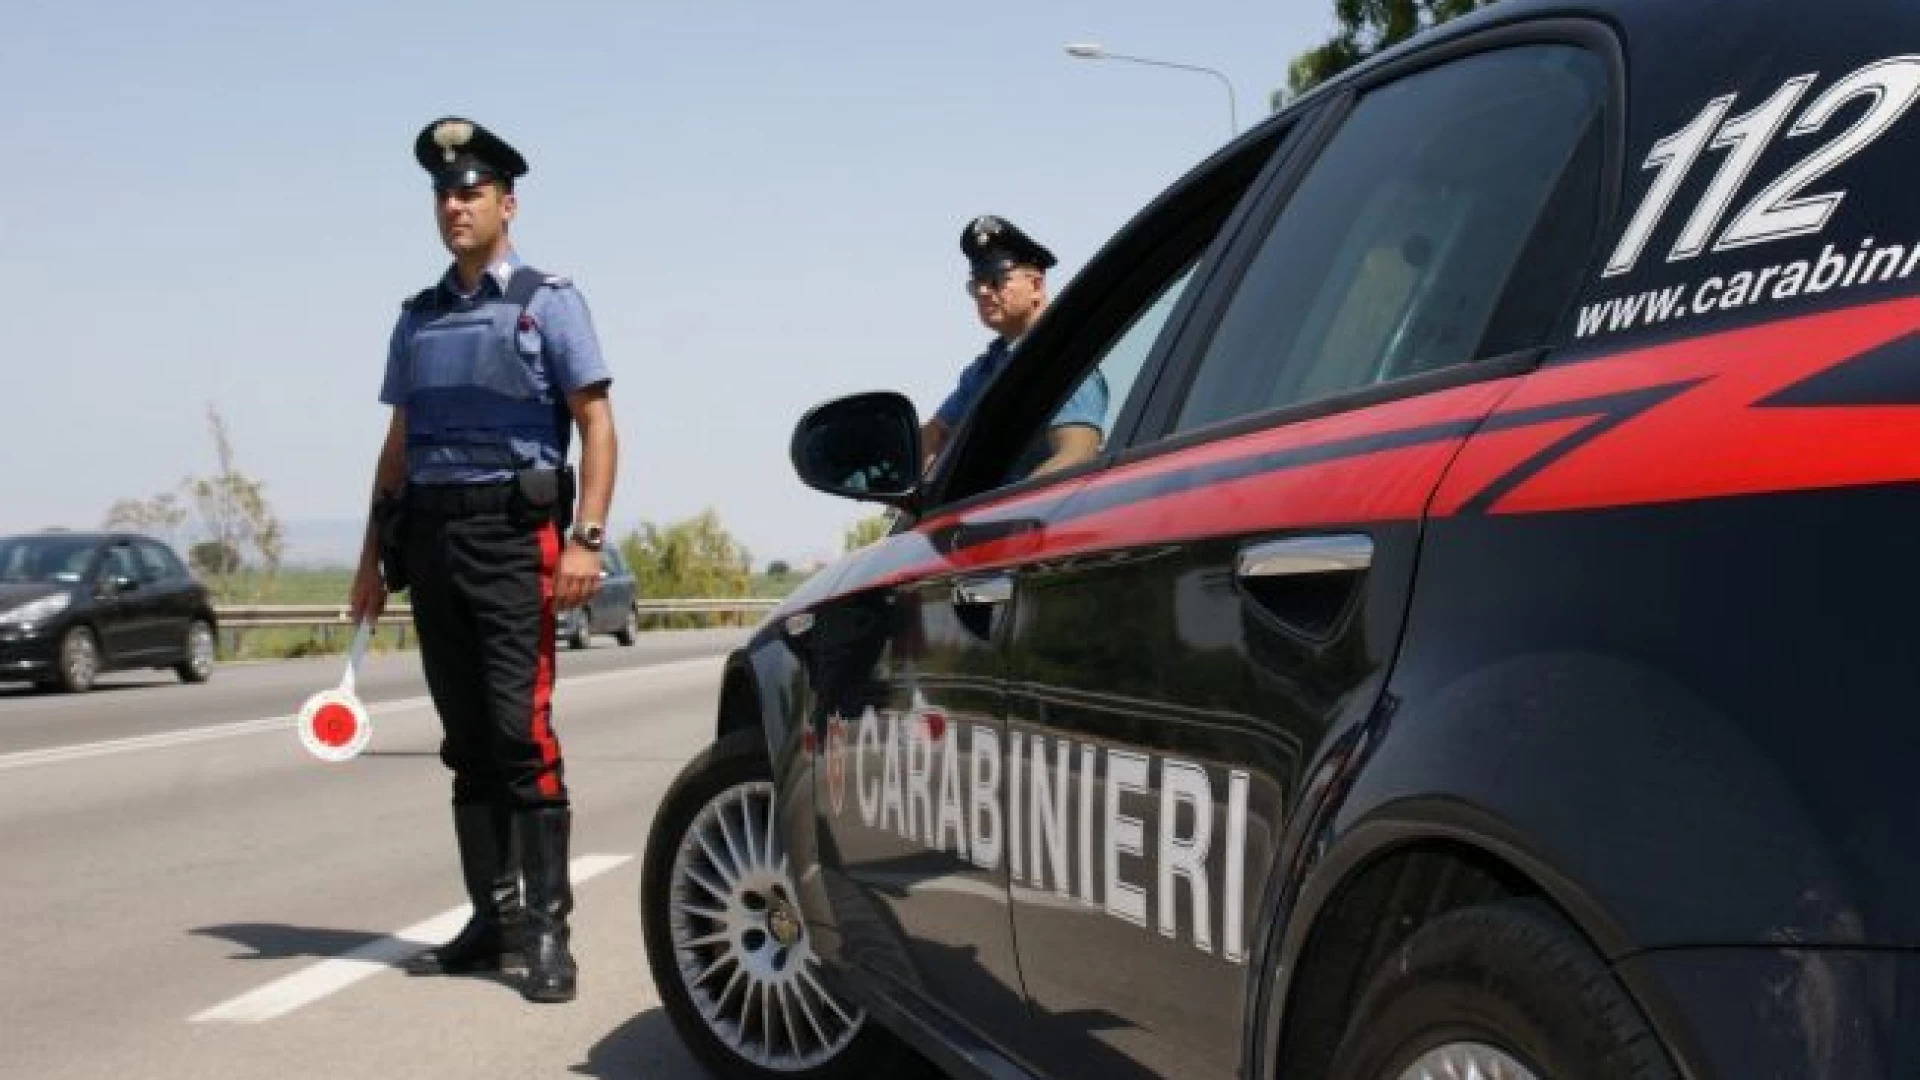 Avezzano: non si fermano all’Alt di una pattuglia , due persone arrestata dai Carabinieri dopo furibondo inseguimento.